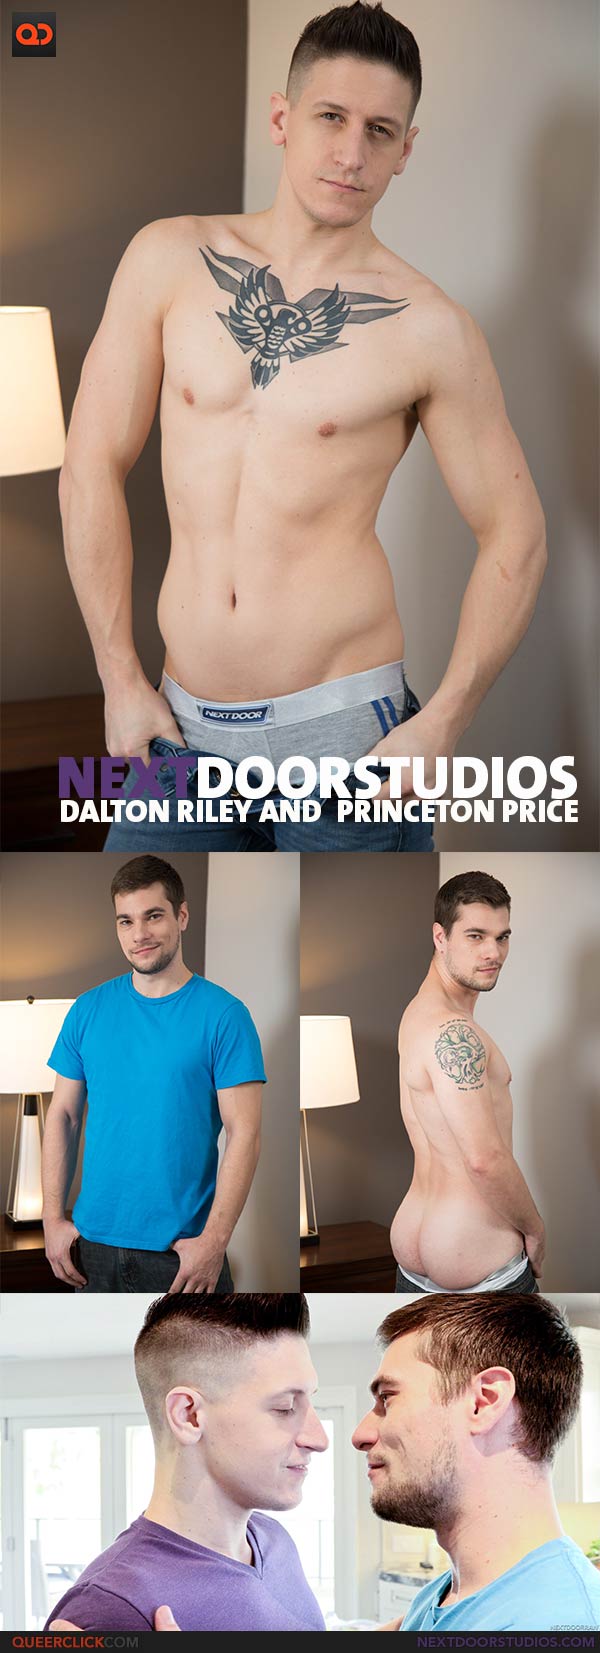 Next Door Studios:  Dalton Riley and  Princeton Price